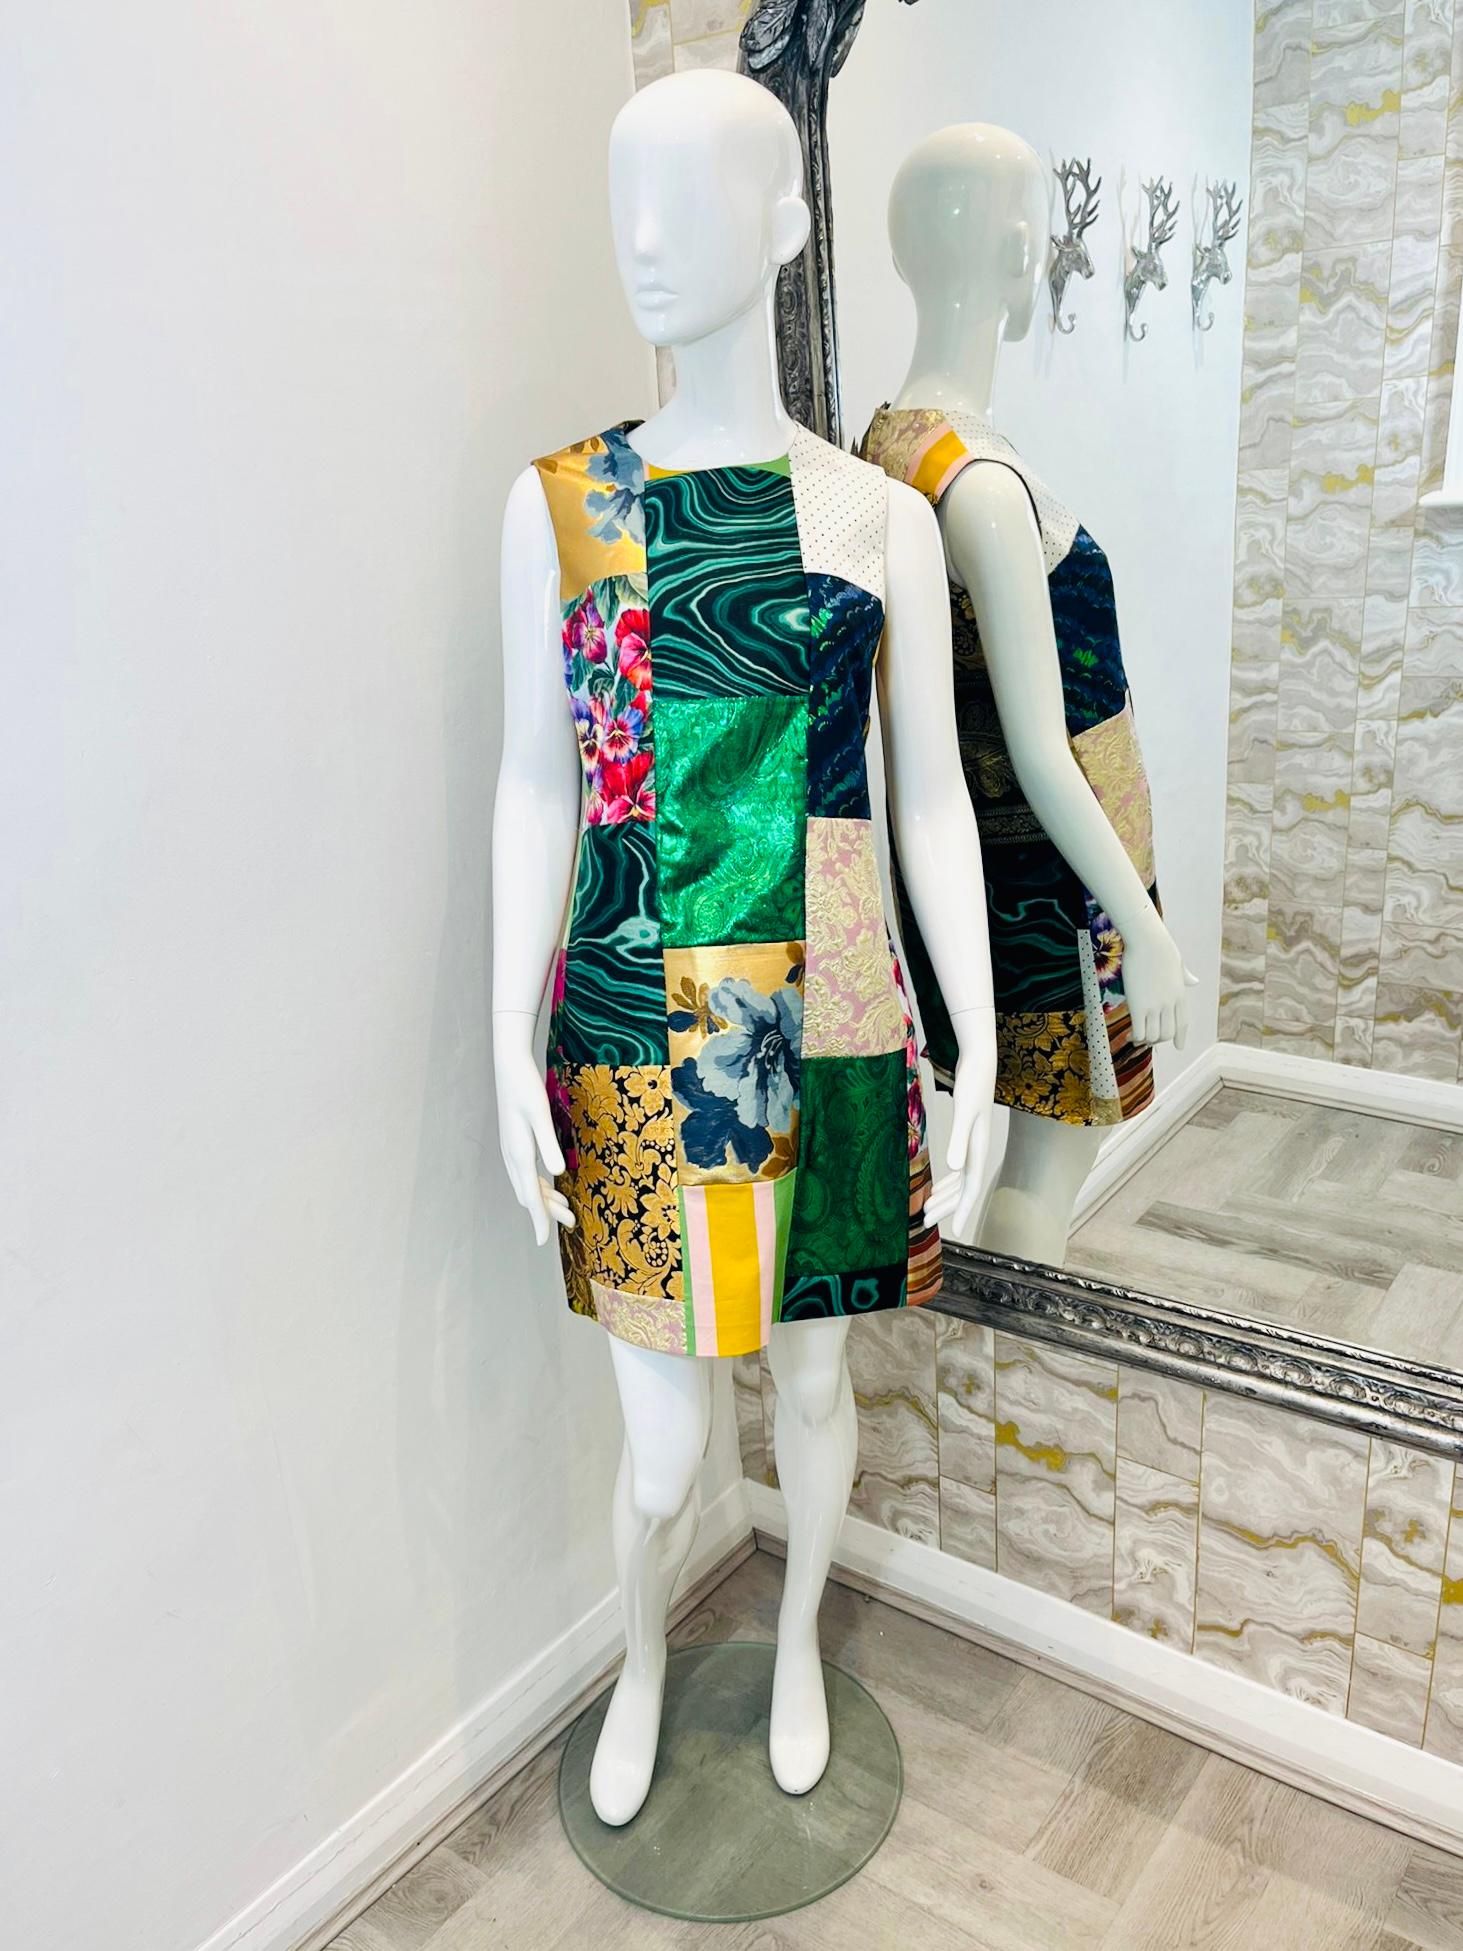 Dolce & Gabbana - Robe patchwork en brocart et lamé

Mini robe sans manches multicolore avec patchworks de différentes matières.

et des textures, telles que le brocart et l'écaille. Rrp £1,400.

Taille - 44IT

Condition - Excellente

Composition -